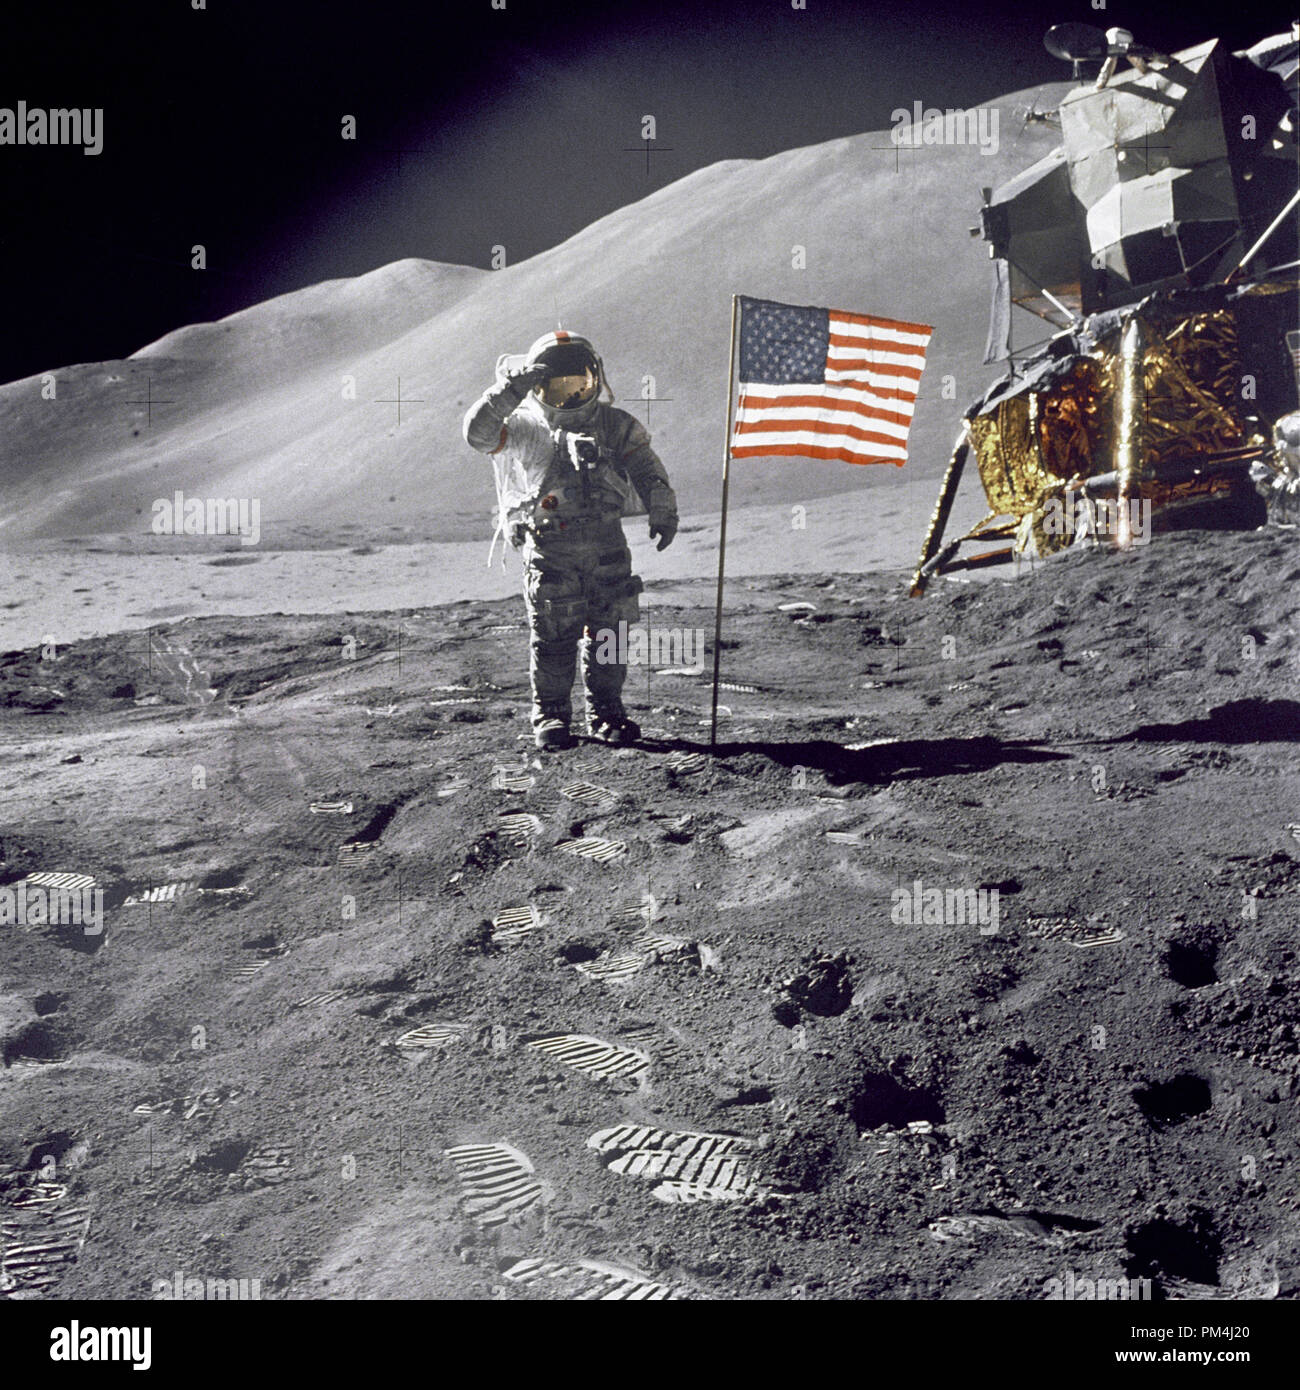 Astronaut David R. Scott, Commander, gibt einen militärischen Gruß im Stehen neben den eingesetzten US-Flagge während der Apollo 15 Lunar Surface Extra Vehicular Activity (EVA) der Hadley-Apennine Landeplatz. Die Flagge wurde gegen Ende von EVA-2 eingesetzt. Die Landefähre "Falcon" ist teilweise sichtbar auf der rechten Seite. Hadley Delta im Hintergrund erhebt sich etwa 4000 Meter (ca. 13,124 Fuß) über die Ebene. Die Basis des Berges ist ca. 5 Kilometer (ca. 3 Satzung Meilen) entfernt. Dieses Photo wurde von Astronauten James B. Irwin, Lunar Module Piloten entschieden. August 1, 1971 Datei R Stockfoto